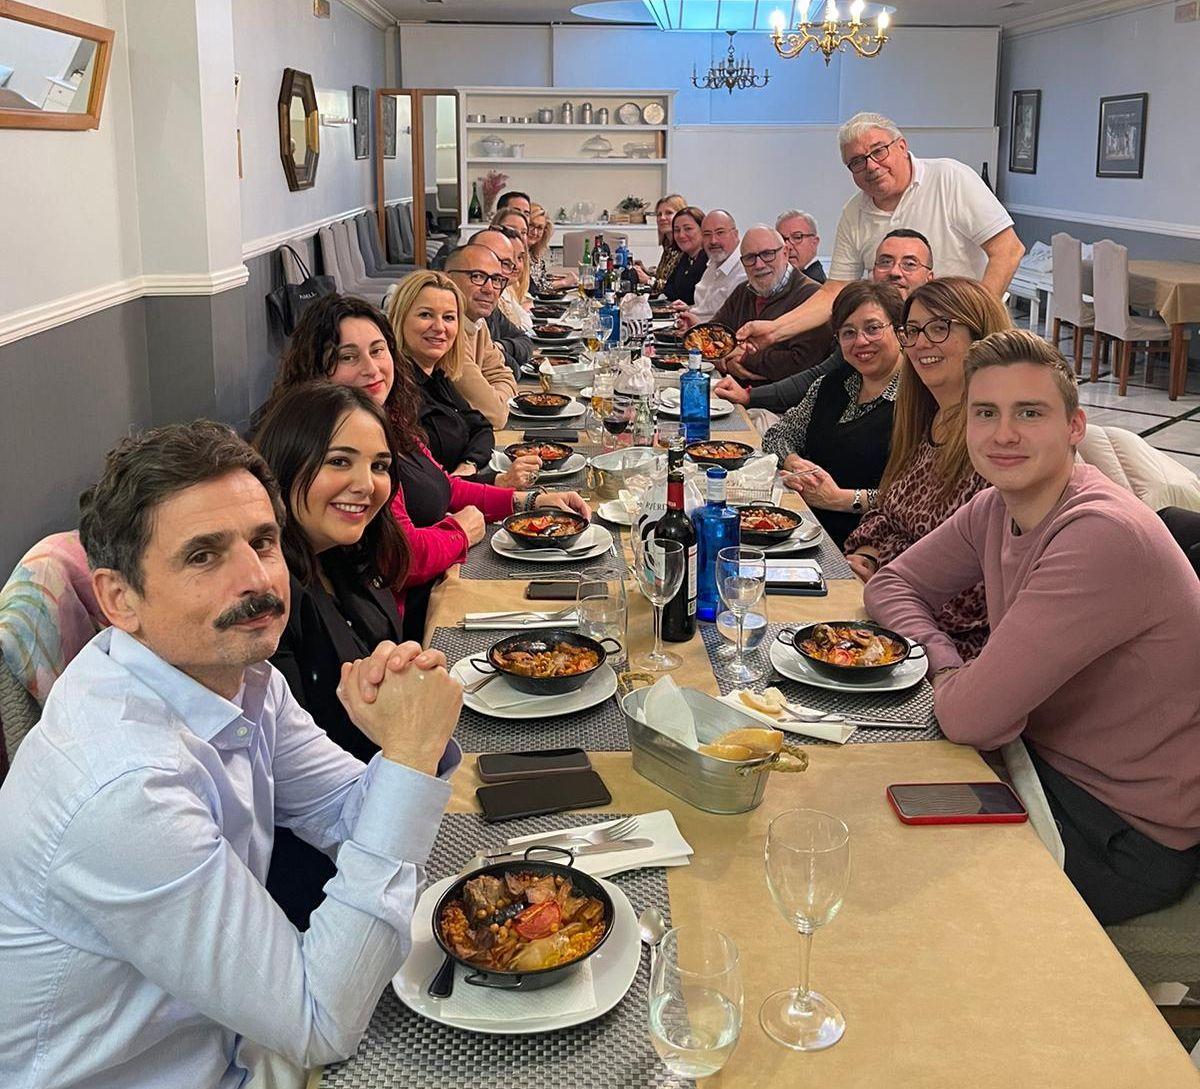 La corporación municipal ha celebrado la tradicional comida de Sant Antoni, con 'arròs al forn' como plato estrella, en el Birbar Espai Gastronòmic Valencià.